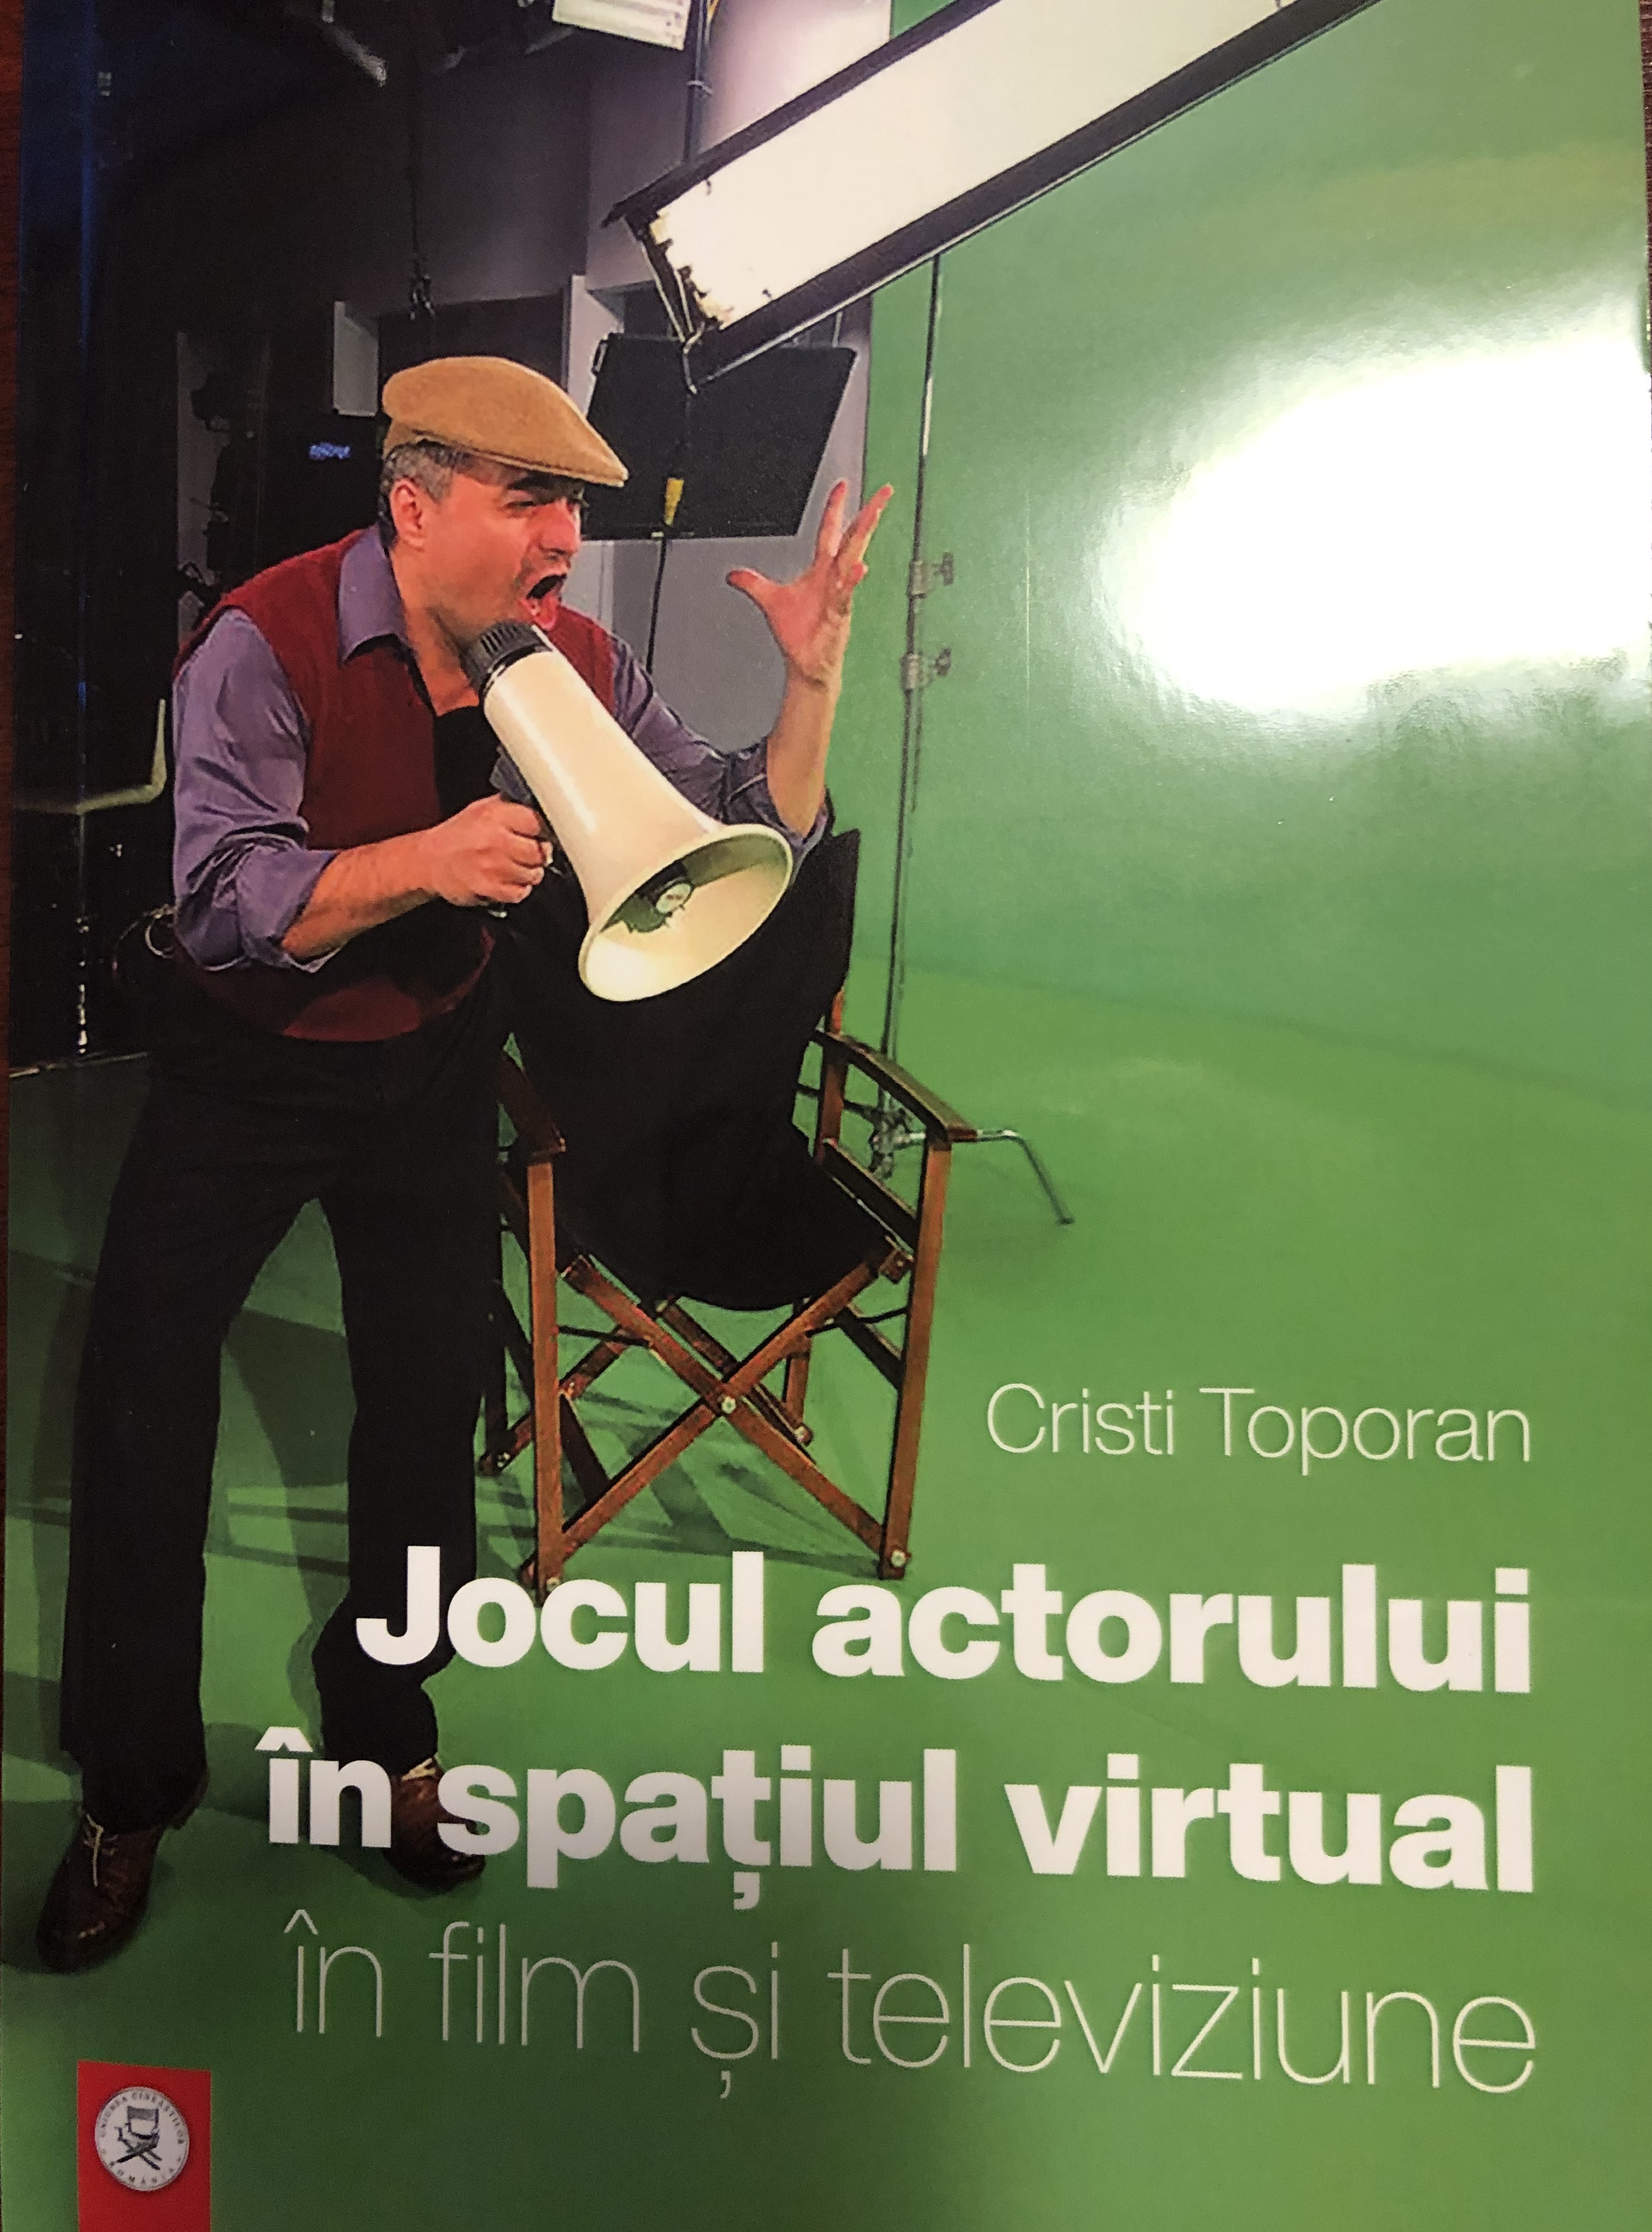 Jocul actorului in spatiul virtual, in cinematograf si televiziune | Cristi Toporan carturesti.ro imagine 2022